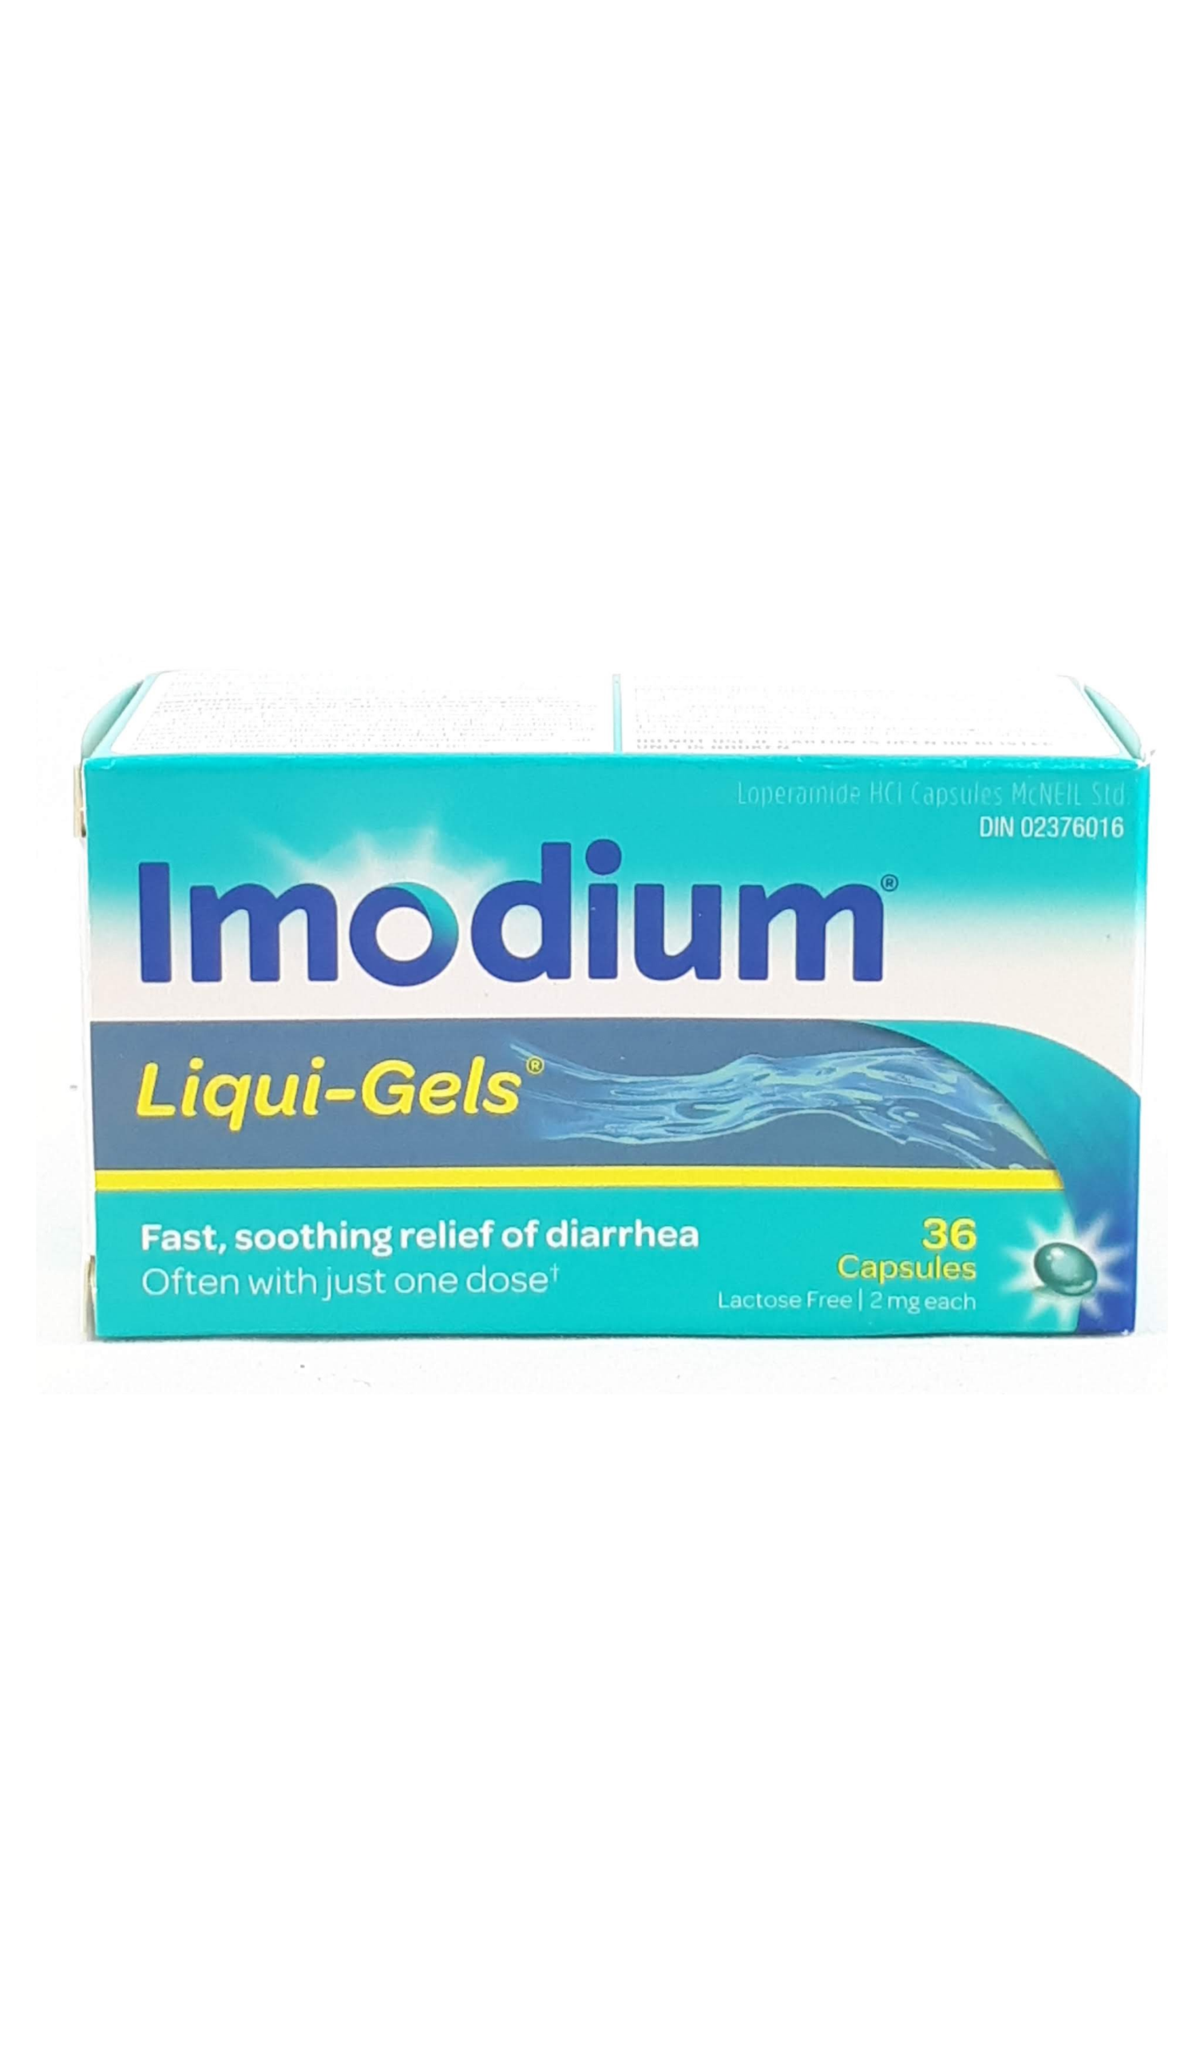 Imodium Imodium liqui-gels, 36 capsules